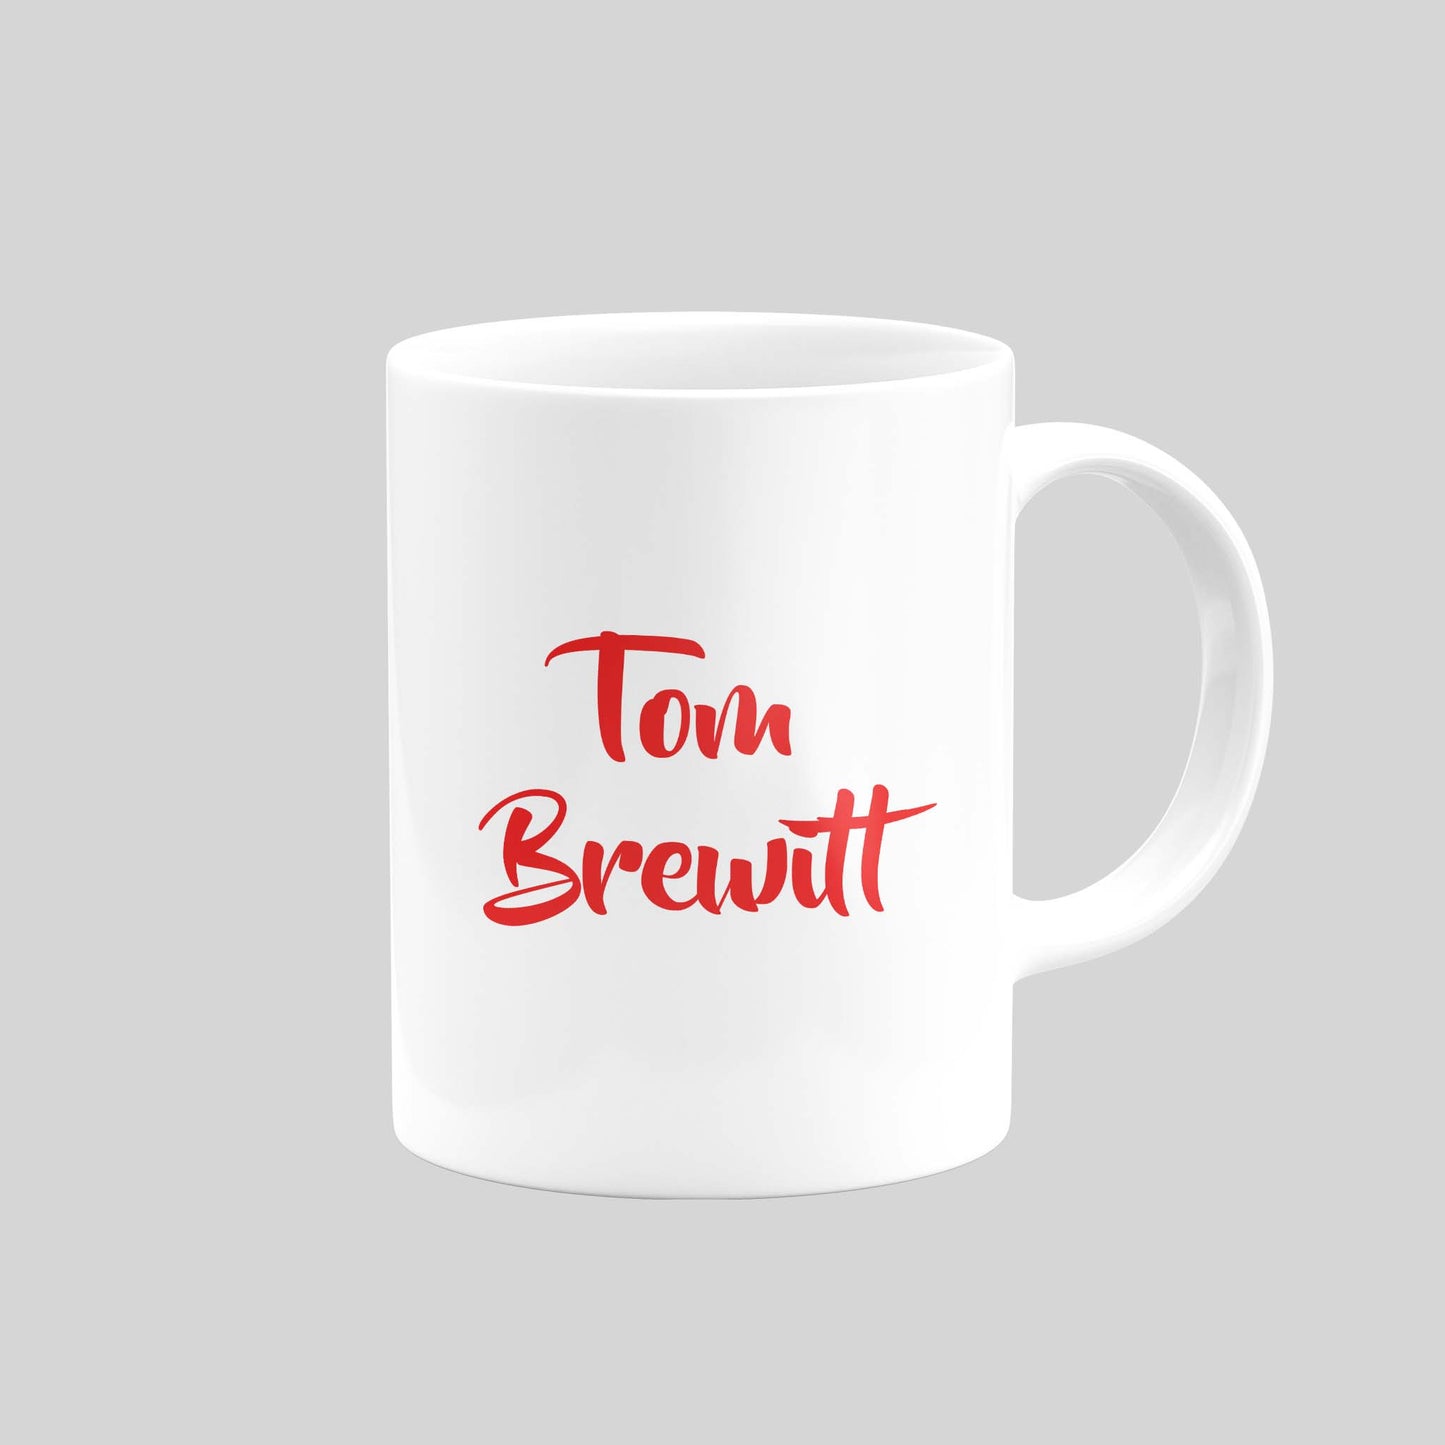 Tom Brewitt Mug